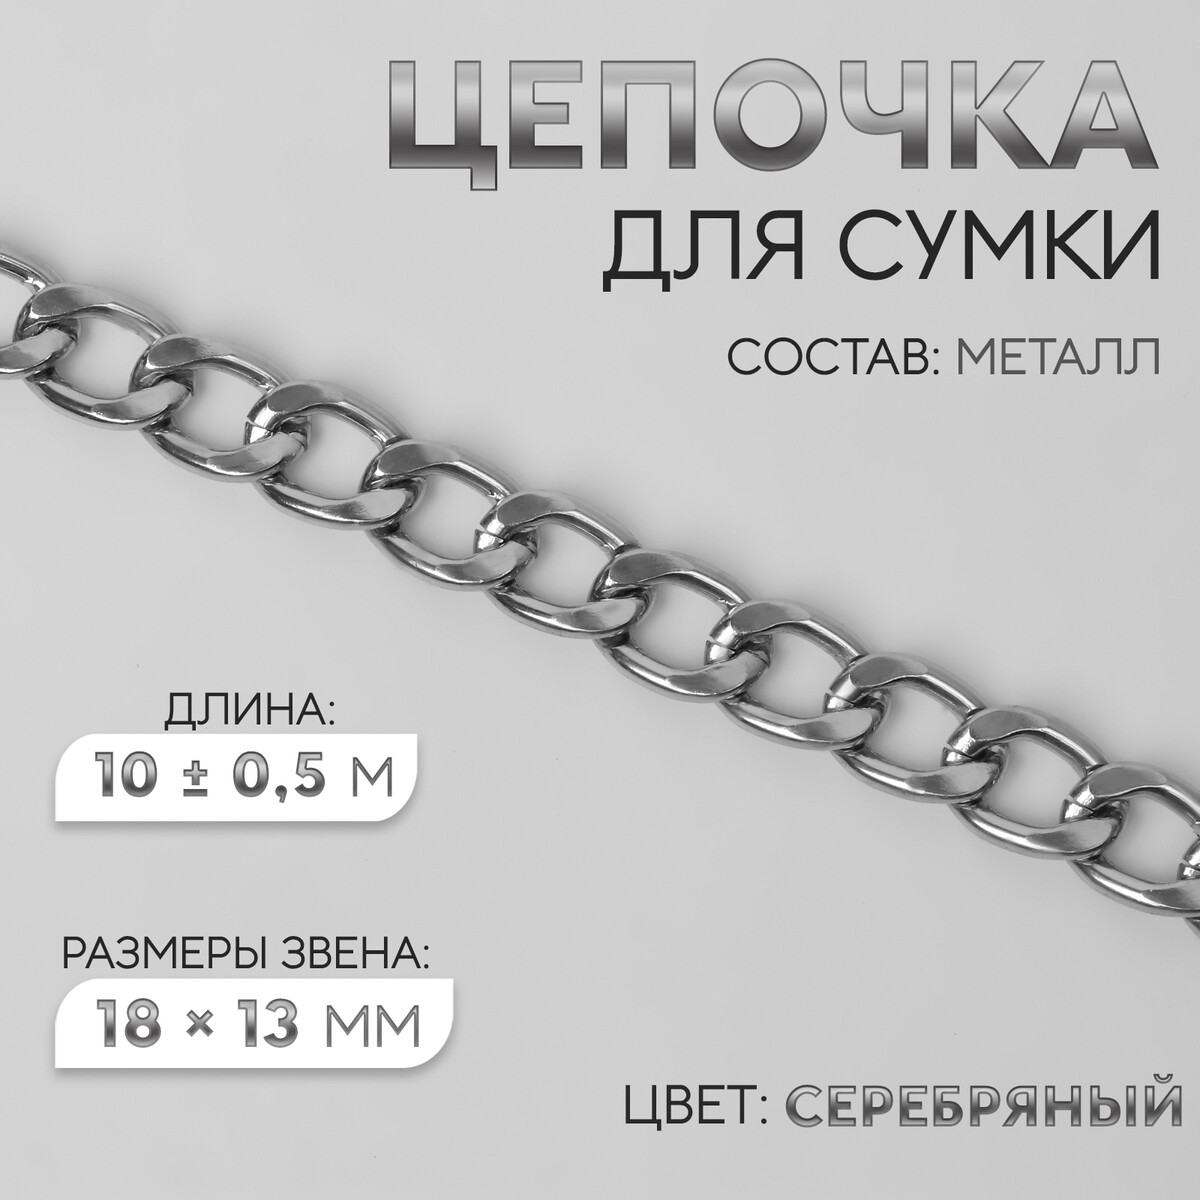 Цепочка для сумки, металлическая, плоская, 18 × 13 мм, 10 ± 0,5 м, цвет серебряный цепочка для сумки плоская алюминиевая 7 8 × 11 1 мм 10 ± 0 5 м серебряный